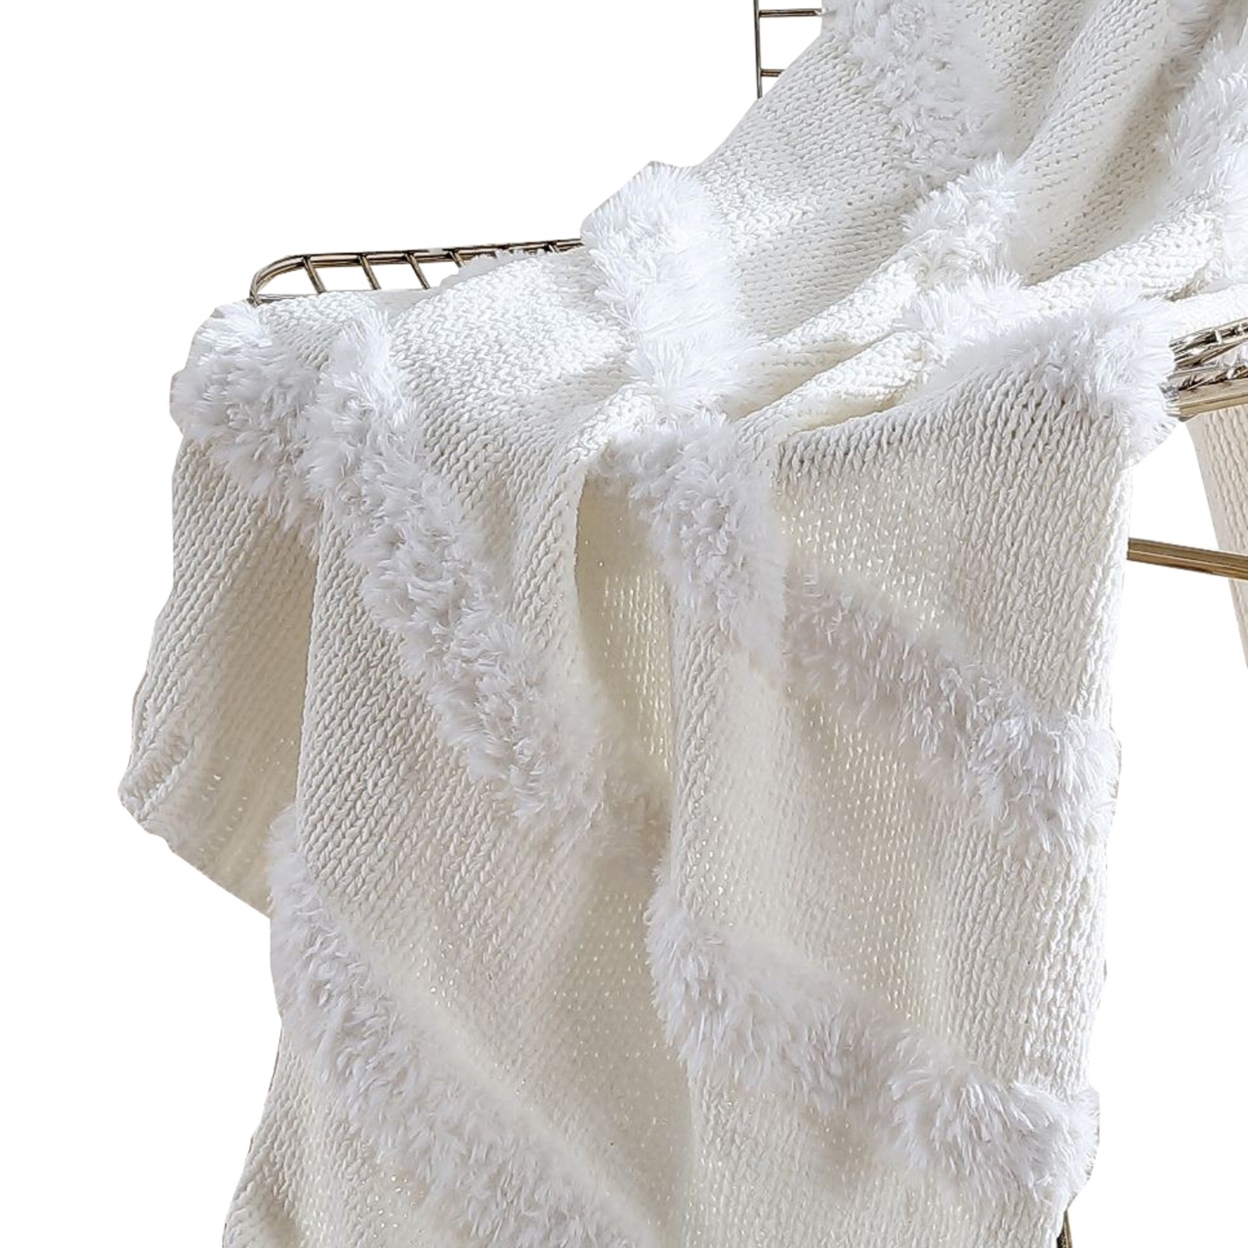 Veria Throw Blanket With Acrylic Faux Fur Embellishment The Urban Port, White- Saltoro Sherpi